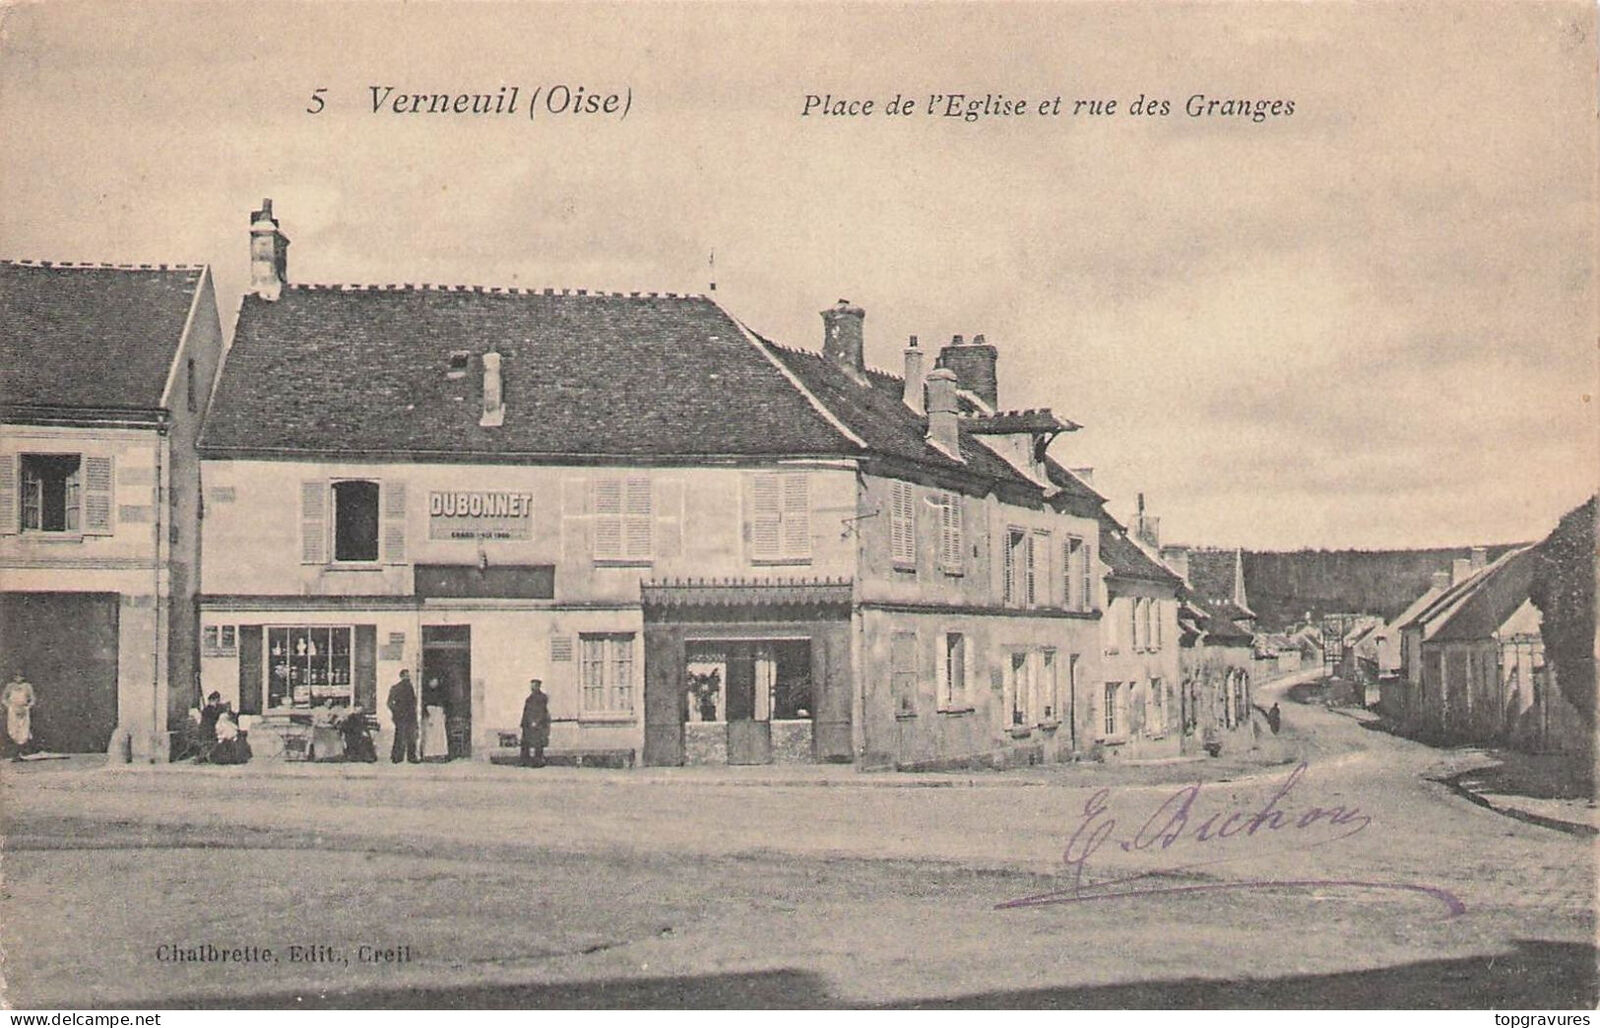 60 VERNEUIL Oise - Place de l\'Eglise and rue des Granges